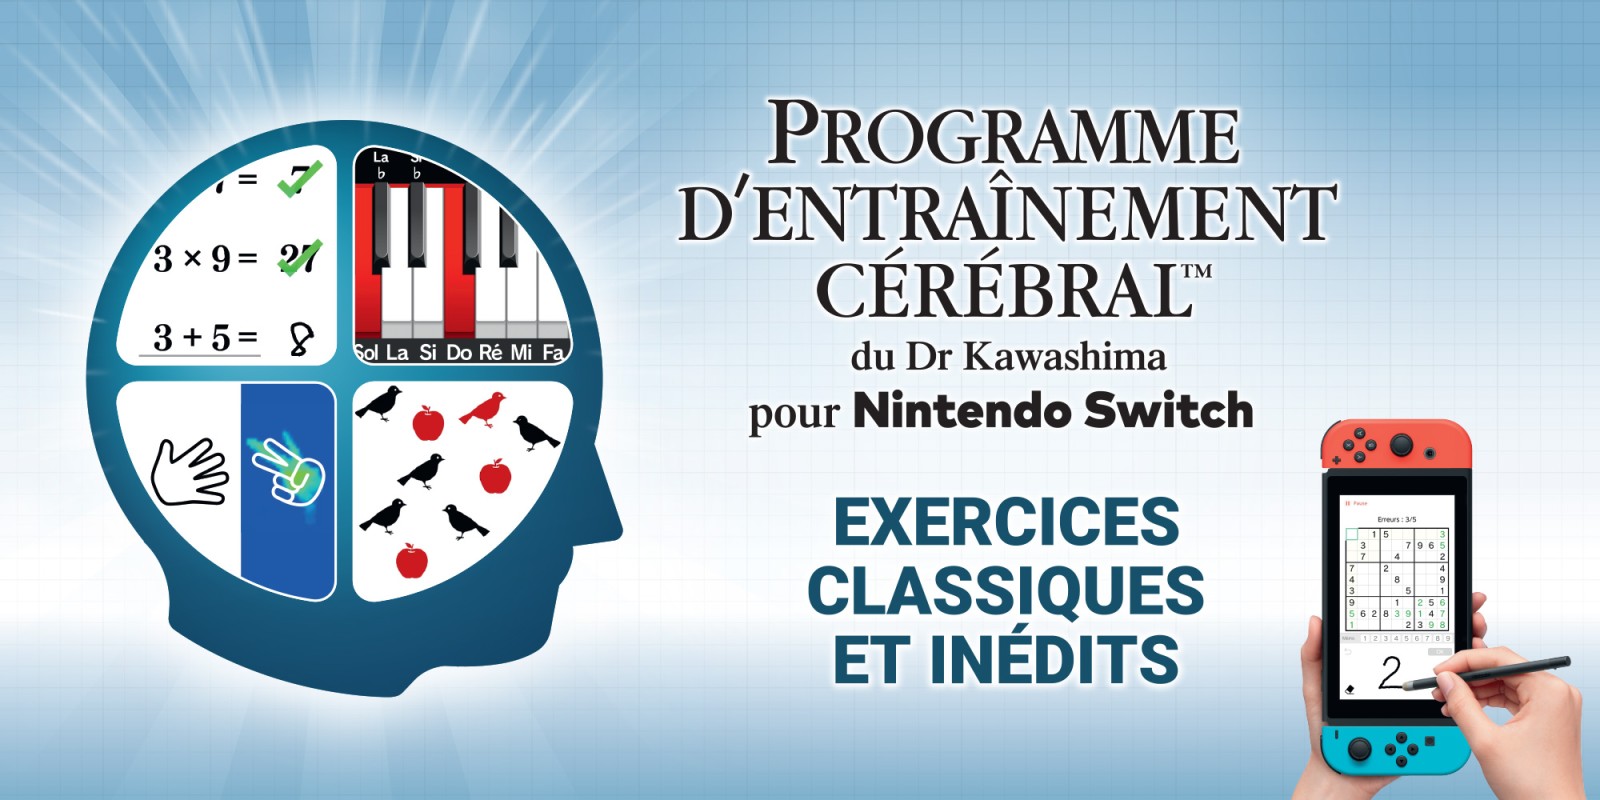 Programme d’entraînement cérébral du Dr Kawashima pour Nintendo Switch